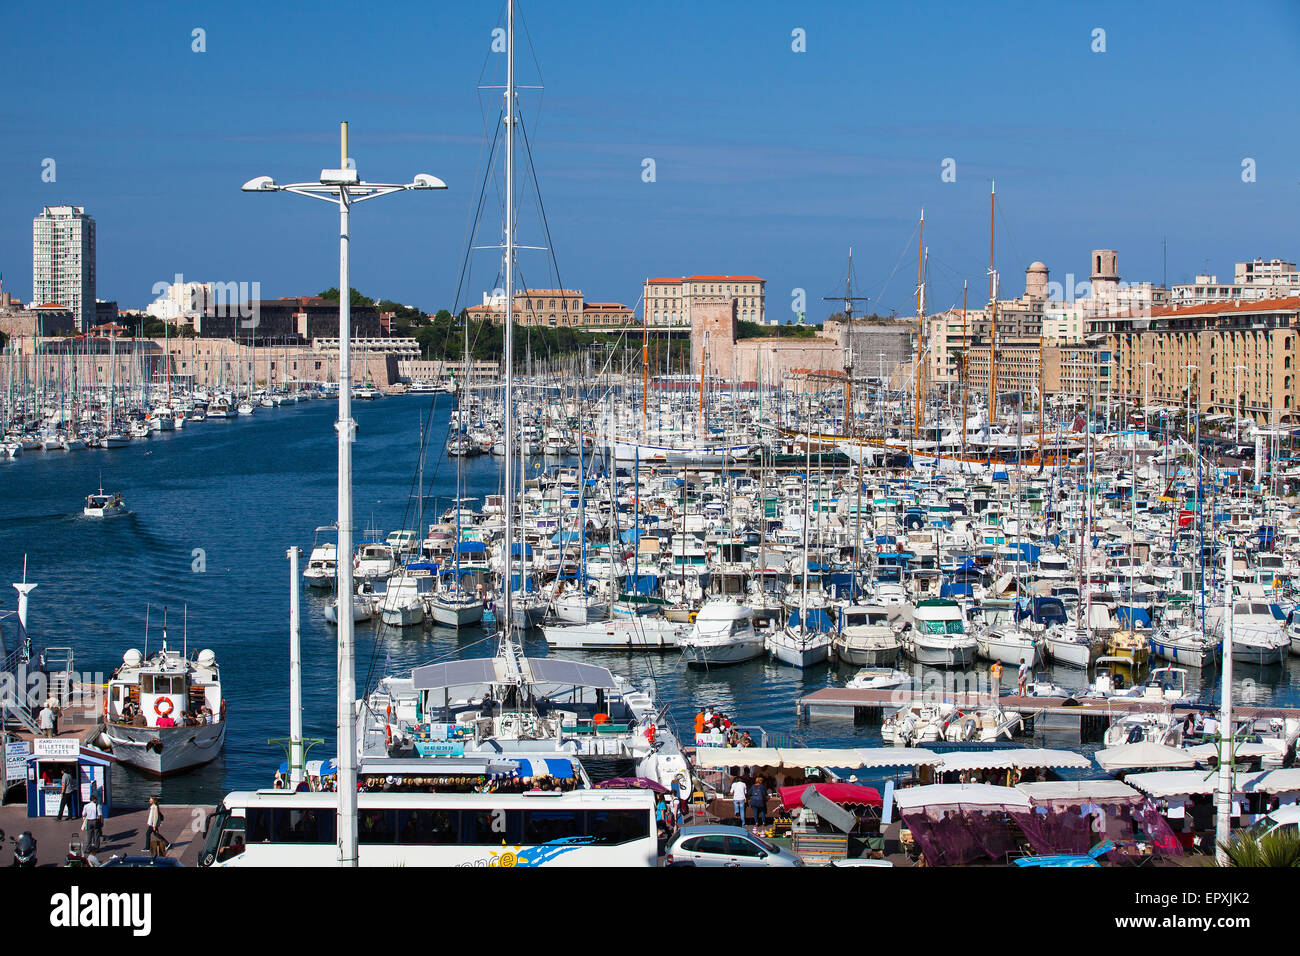 Marseille,France - Mai 8,2011 : Vieux port plein de bateaux et yachts.Il a été la rade de Marseille Banque D'Images